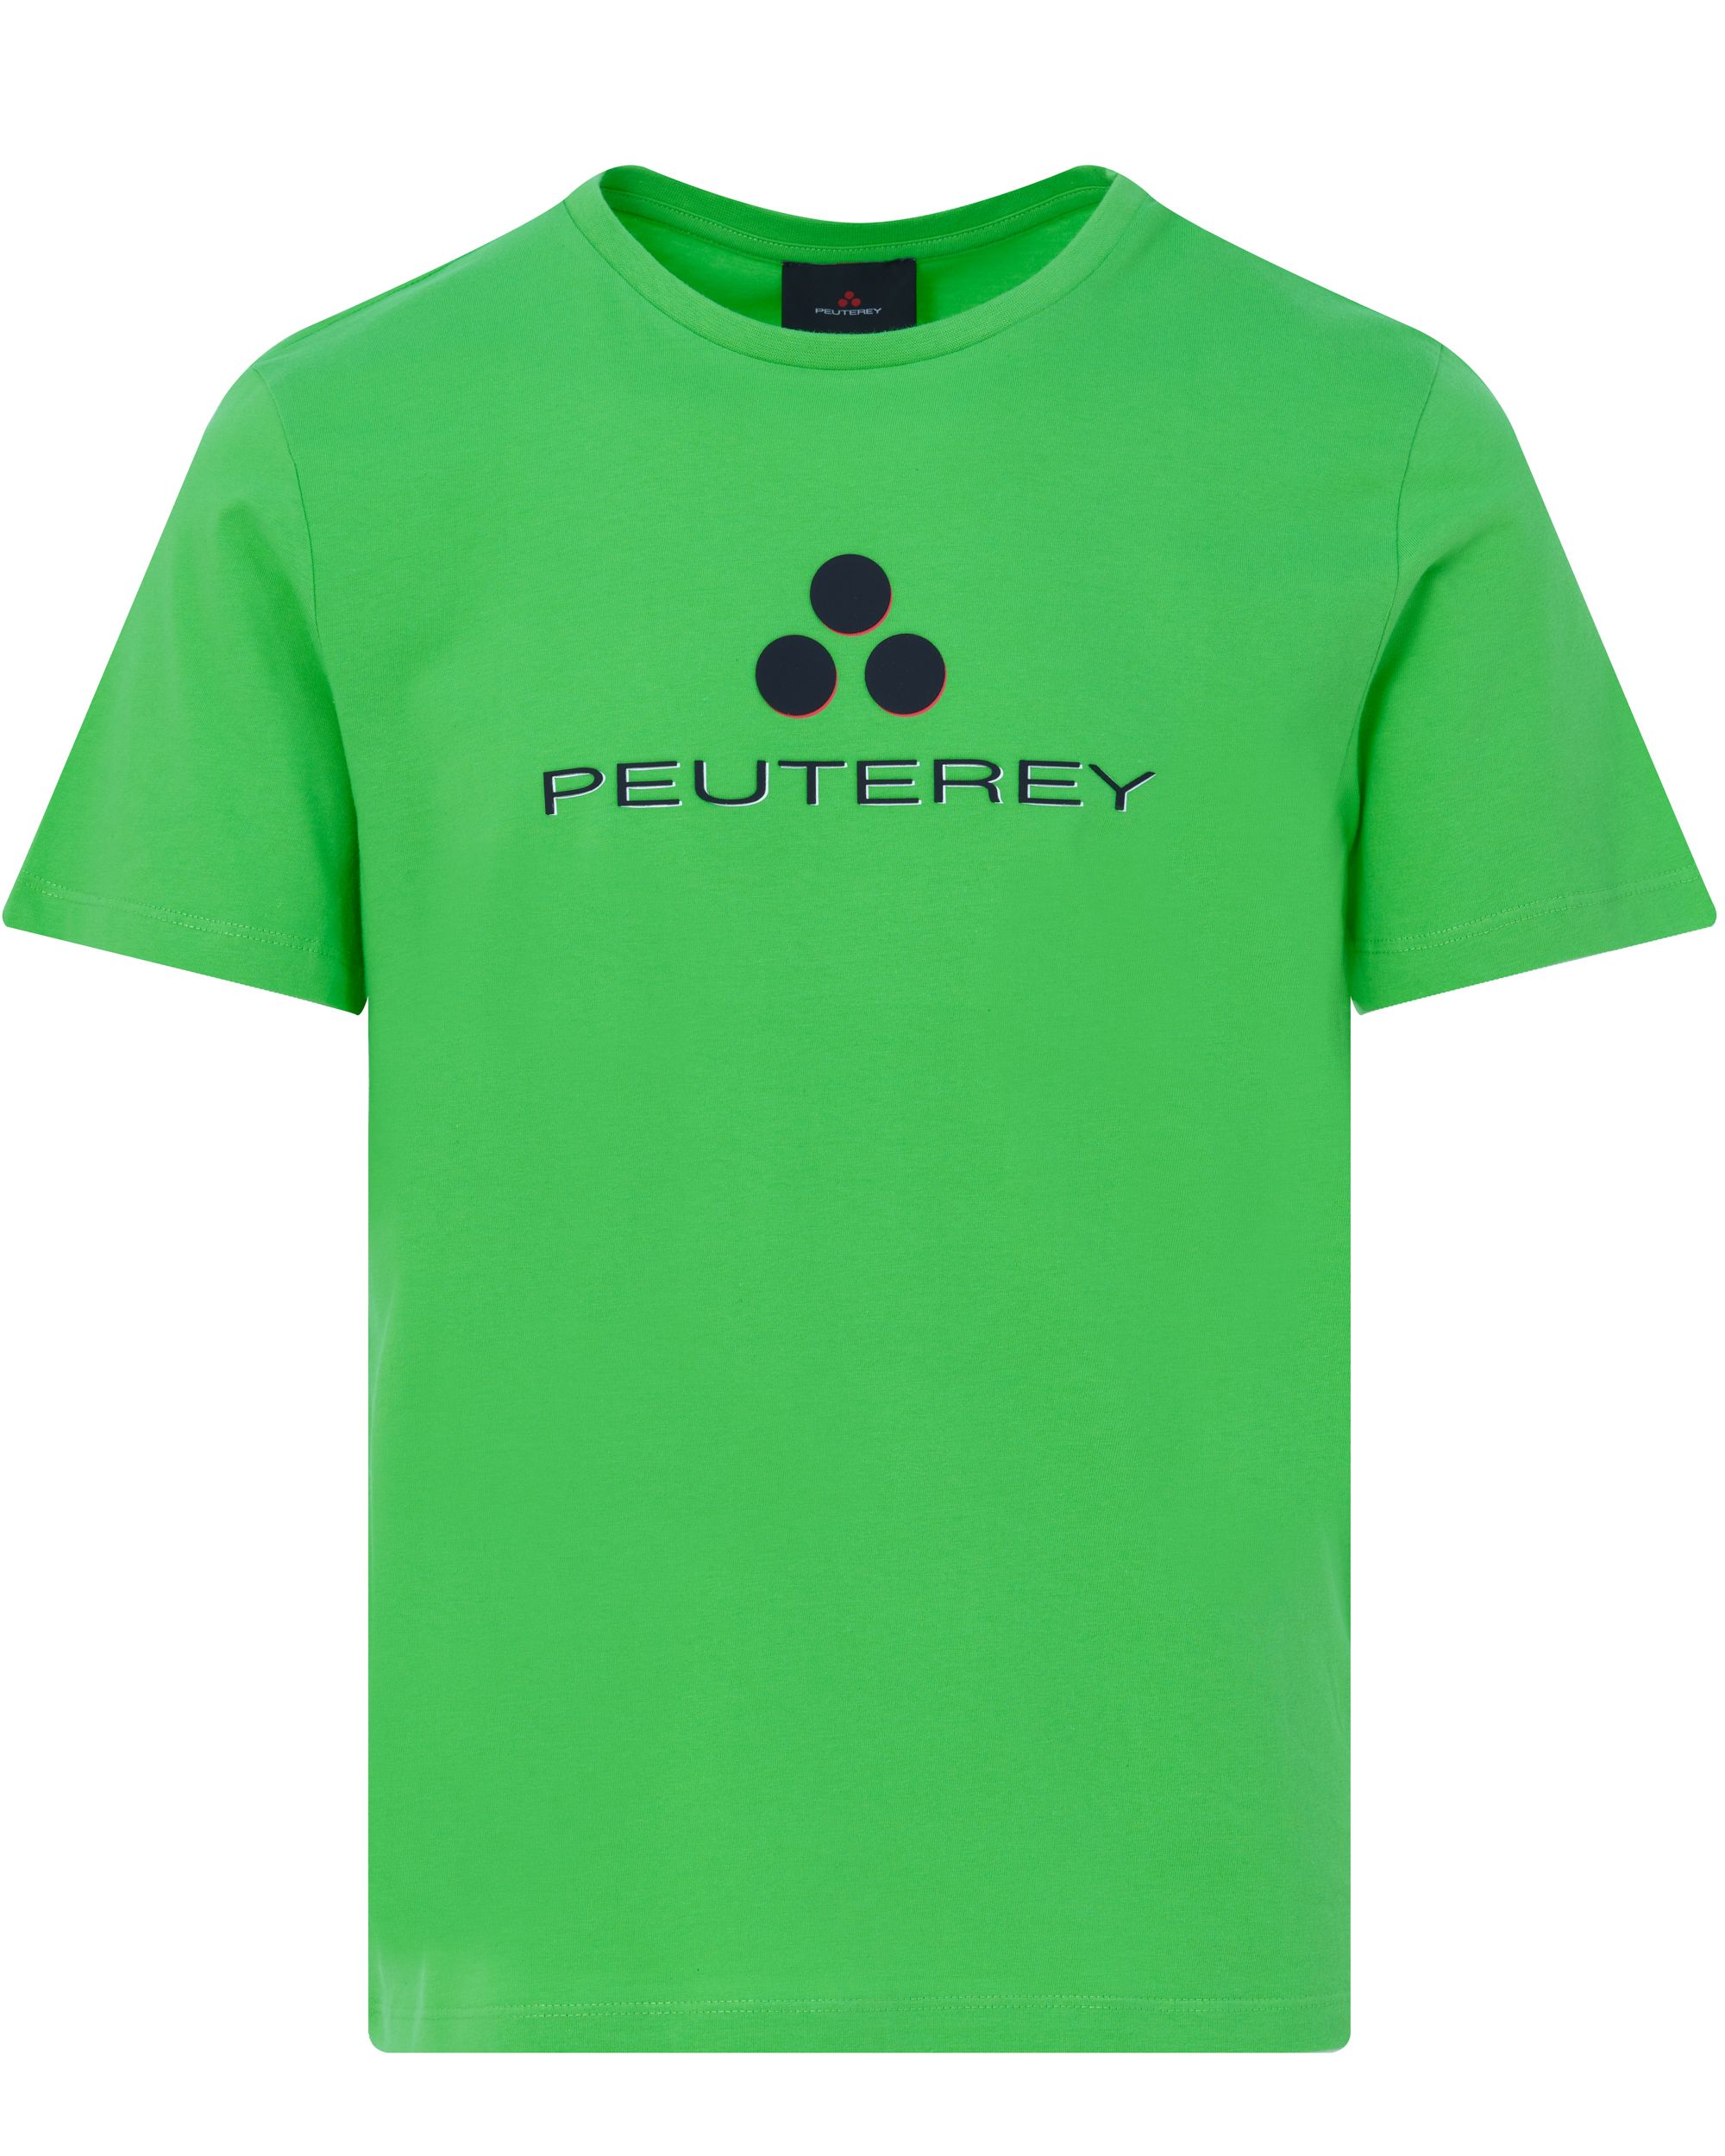 Peuterey T-shirt KM Groen 083993-001-L